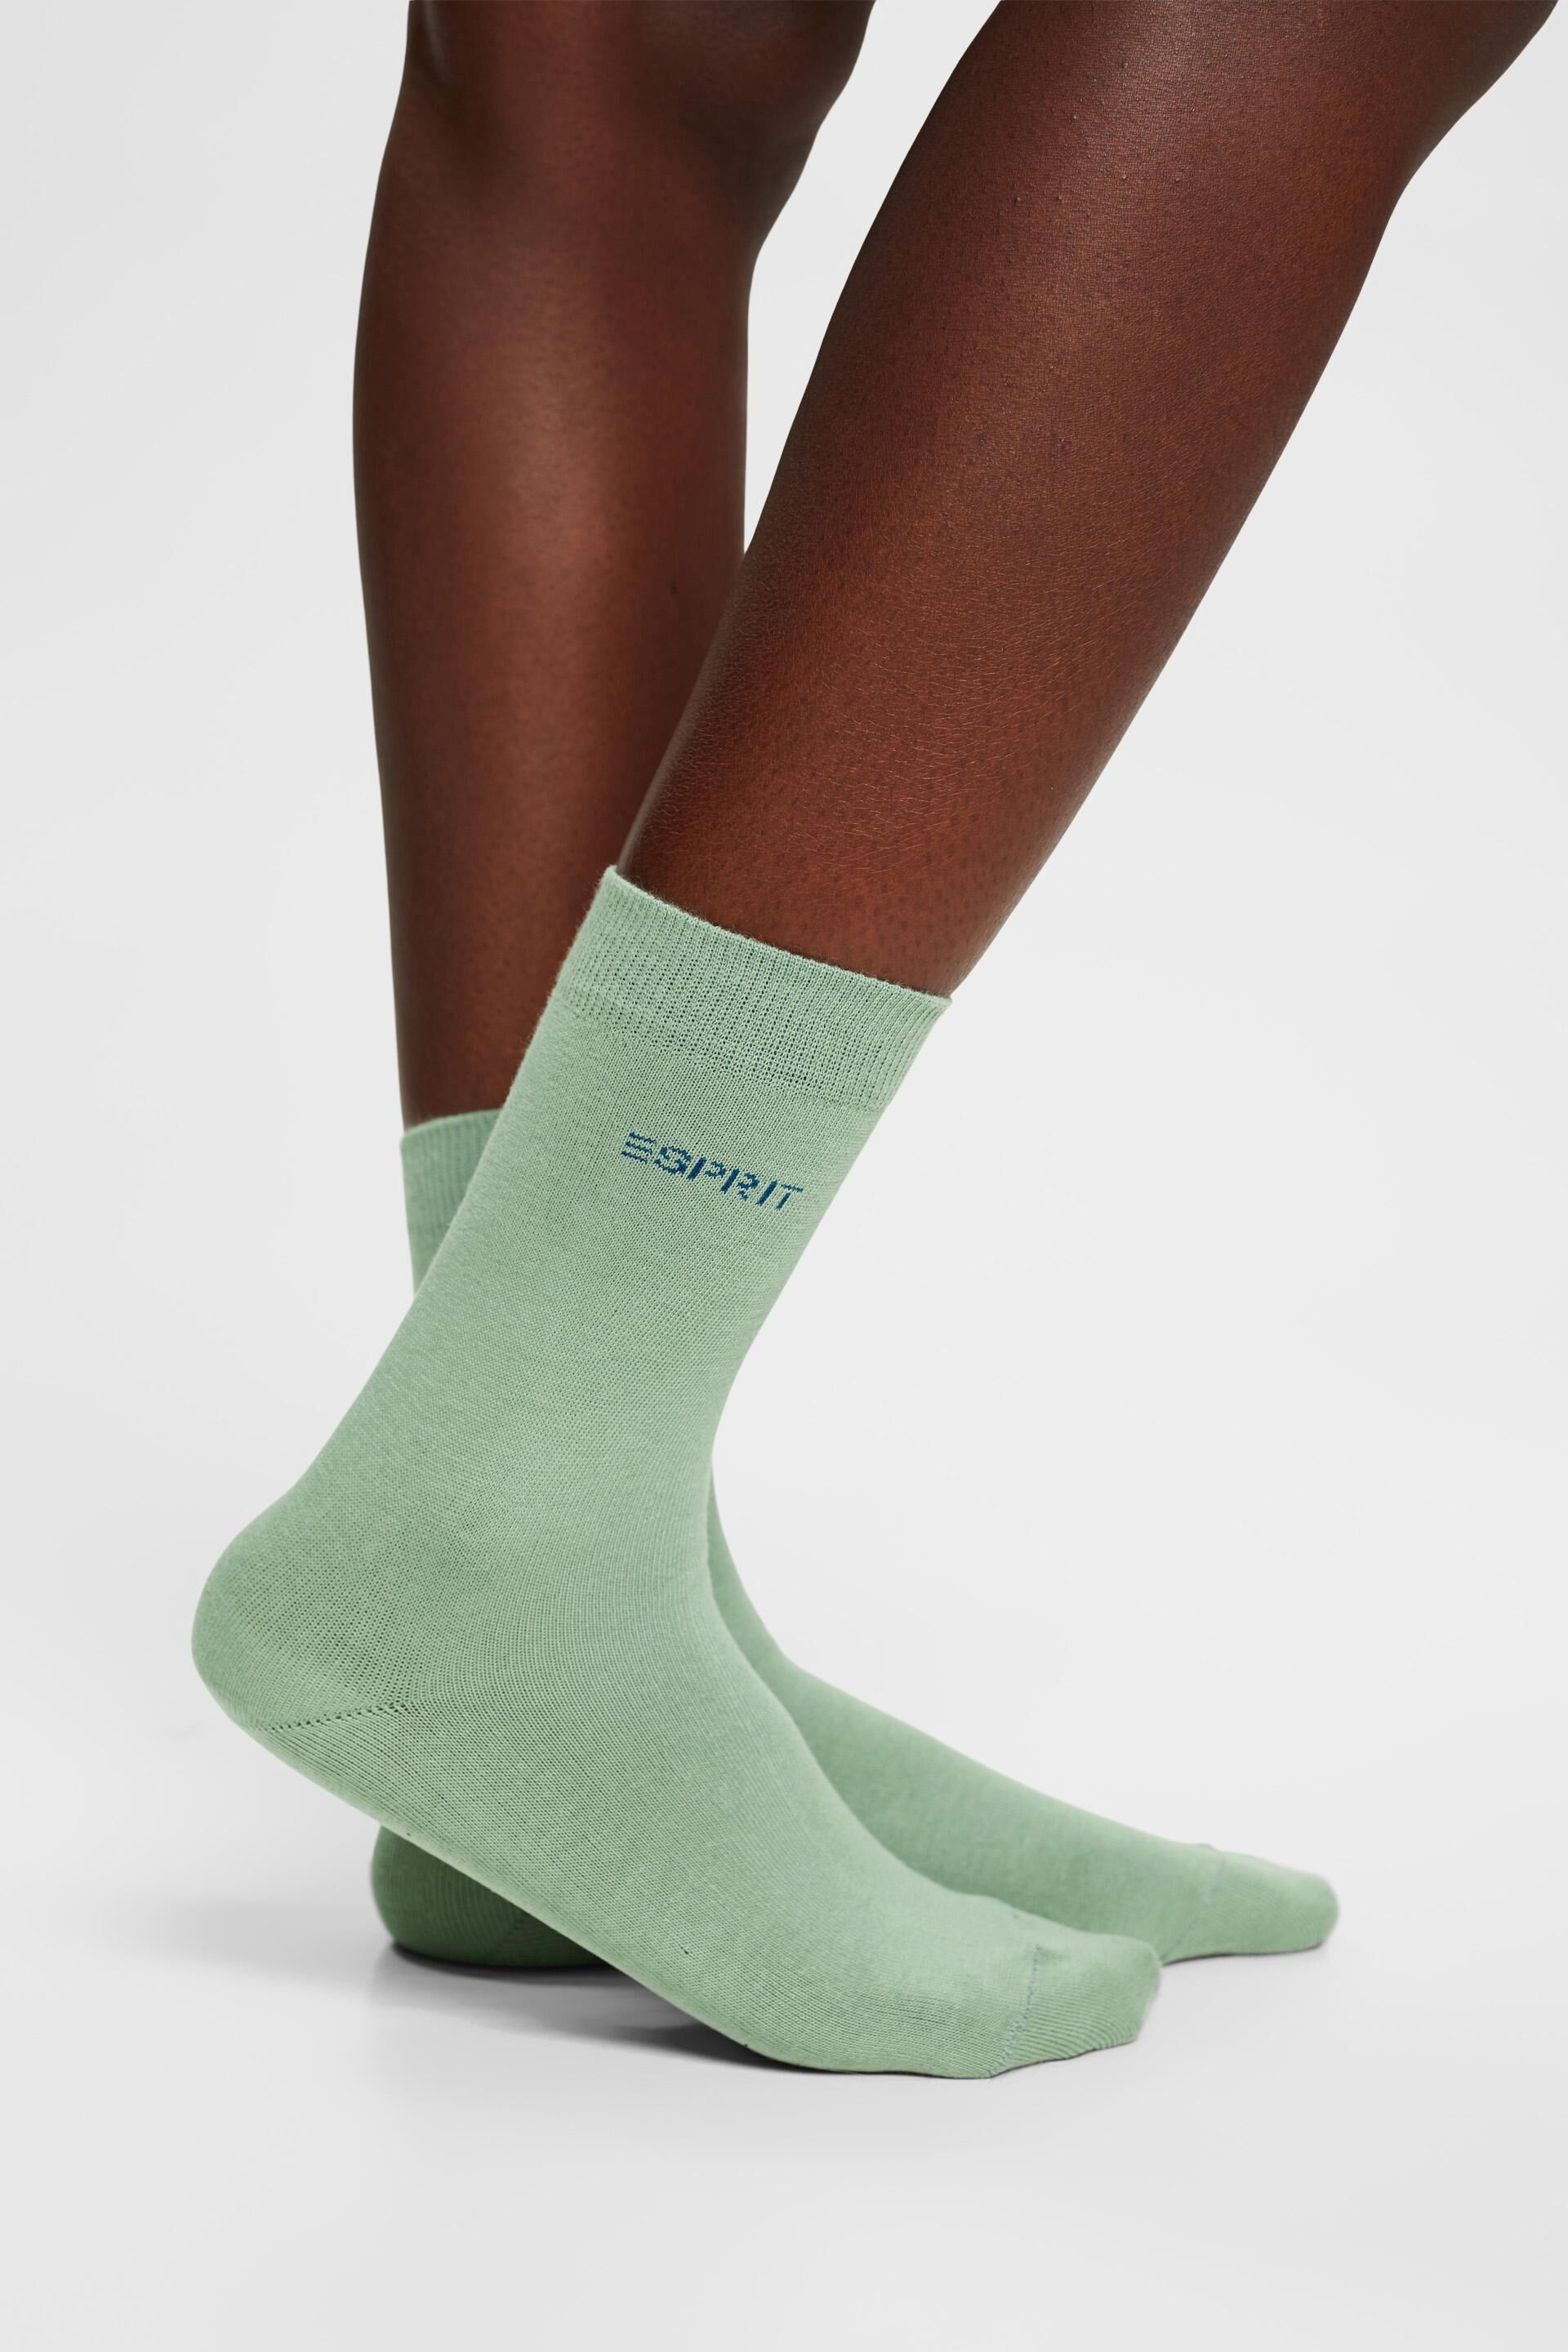 Esprit 5er-Pack aus Socken Bio-Baumwolle